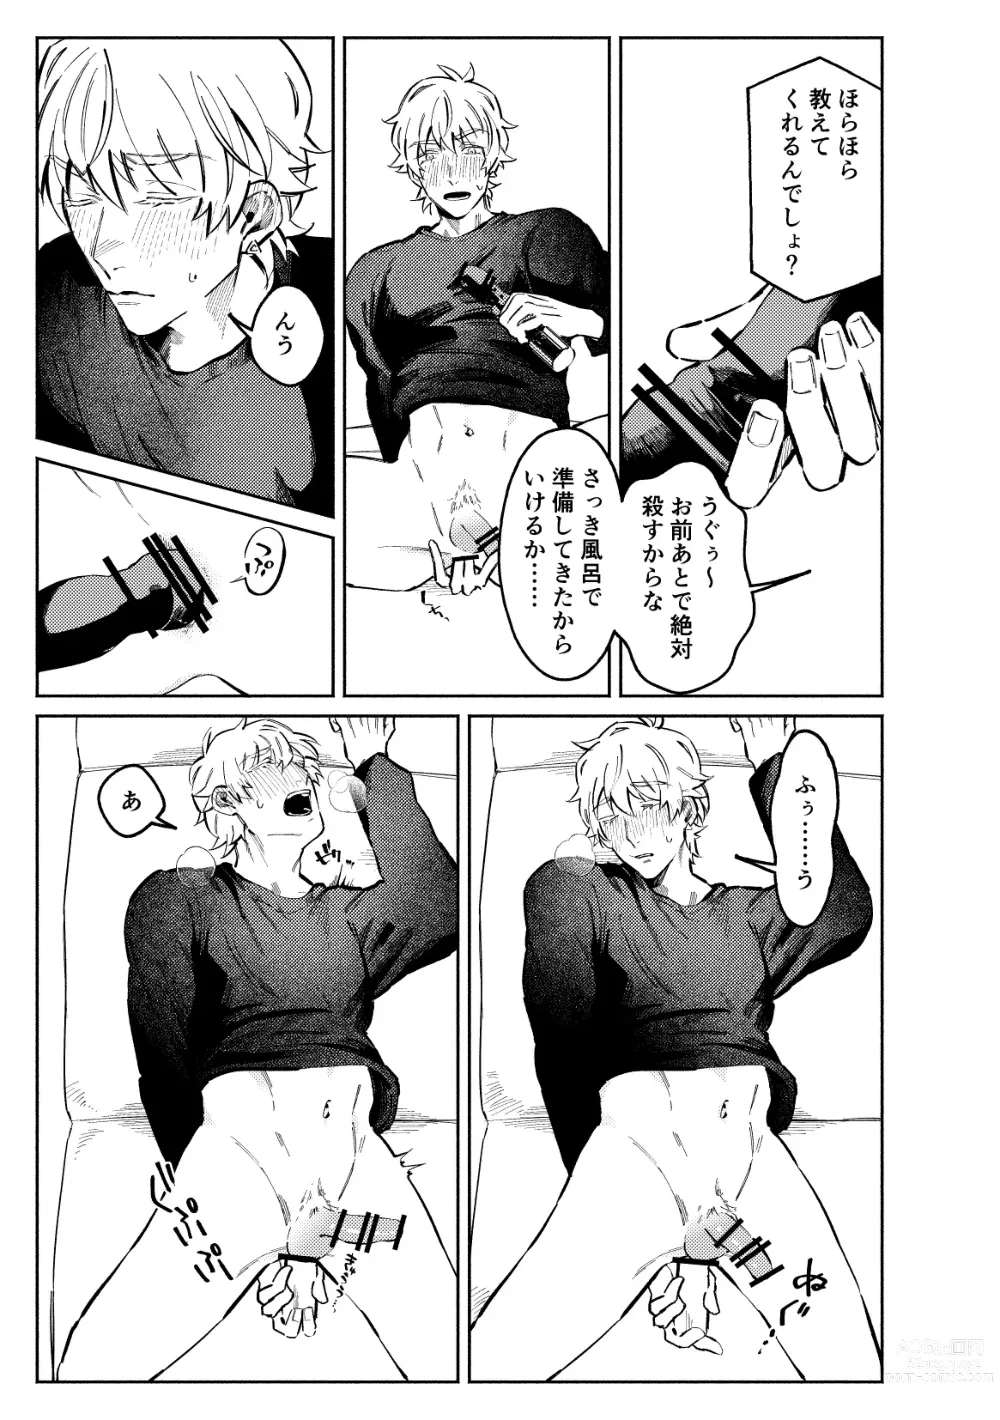 Page 9 of doujinshi 1stDRxxx